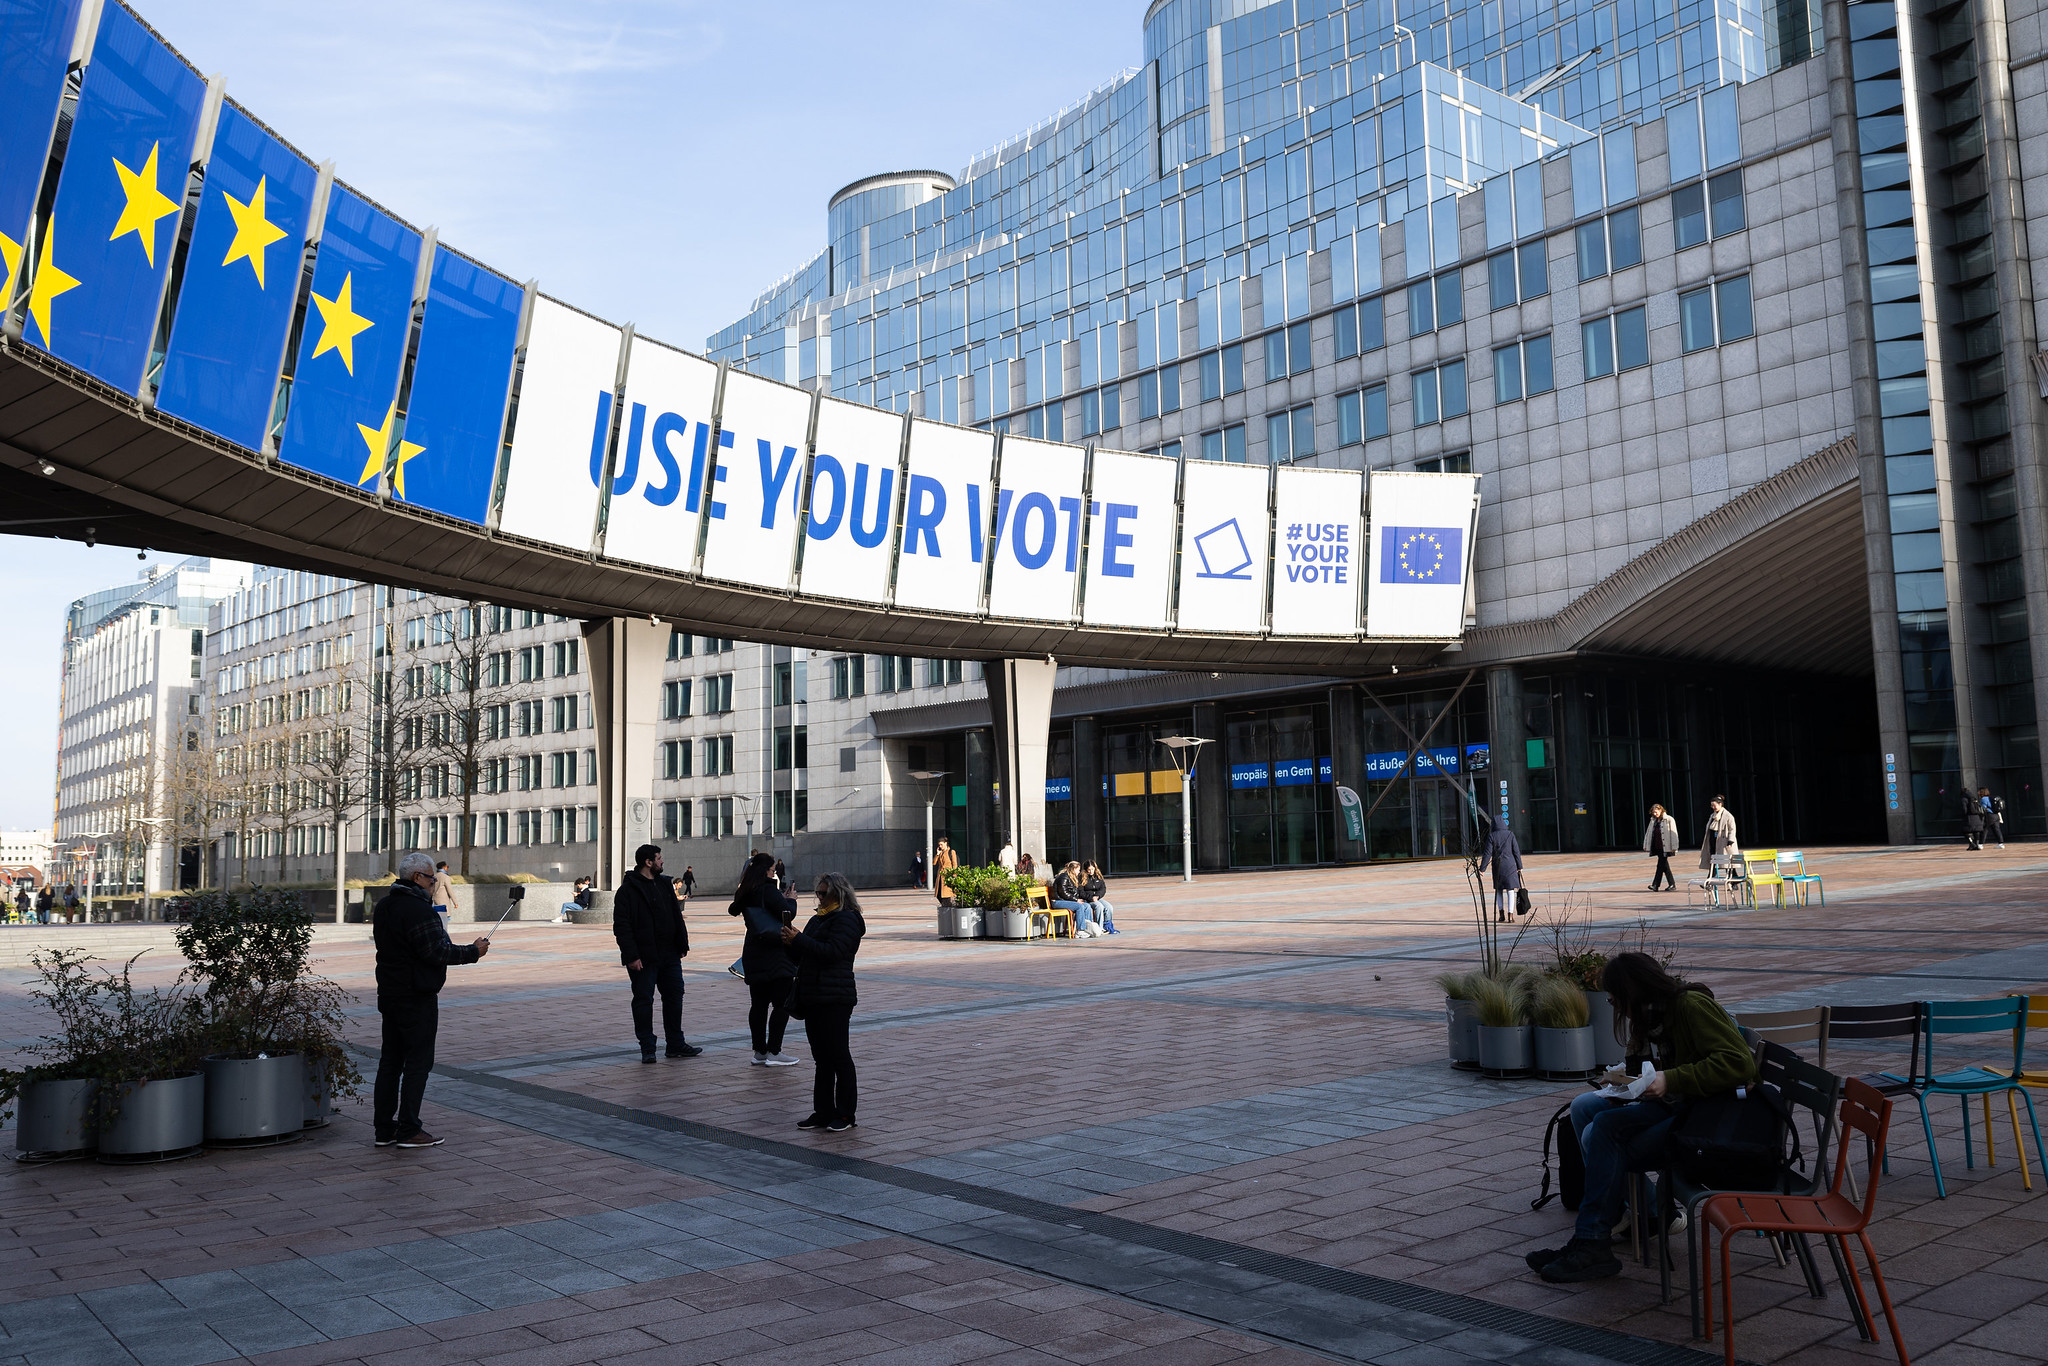 Campagne 'Use your vote' voor de Europese Parlementsverkiezingen